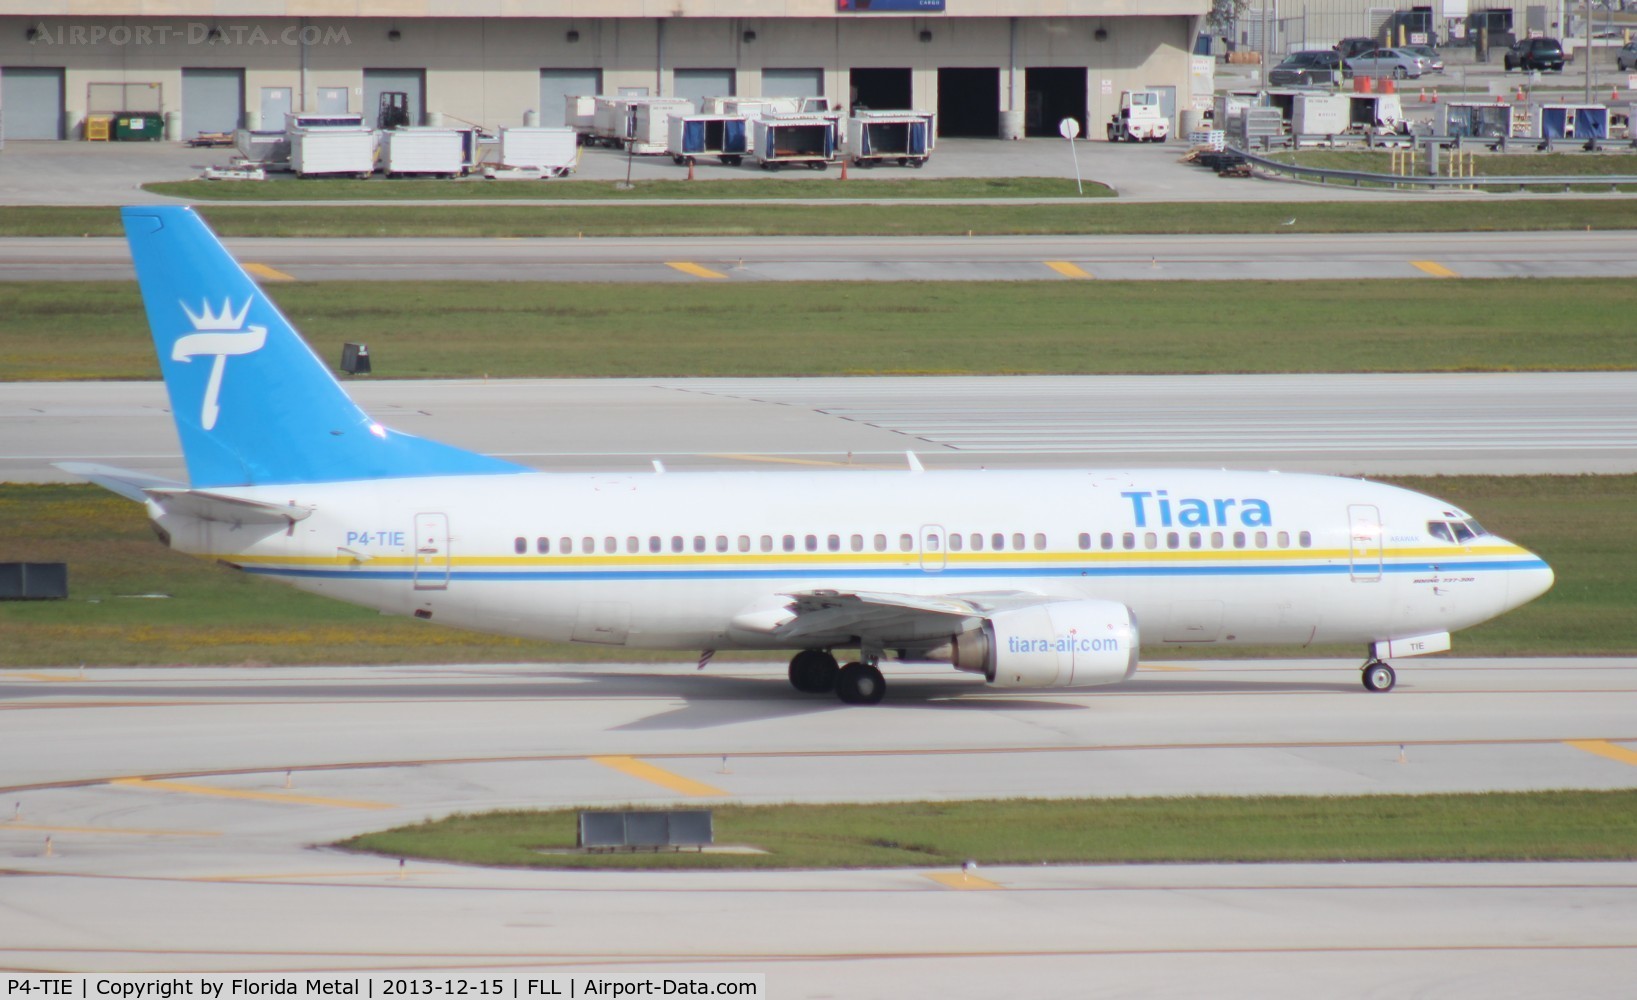 P4-TIE, 1988 Boeing 737-322 C/N 24249, Tiara Air Aruba 737-300